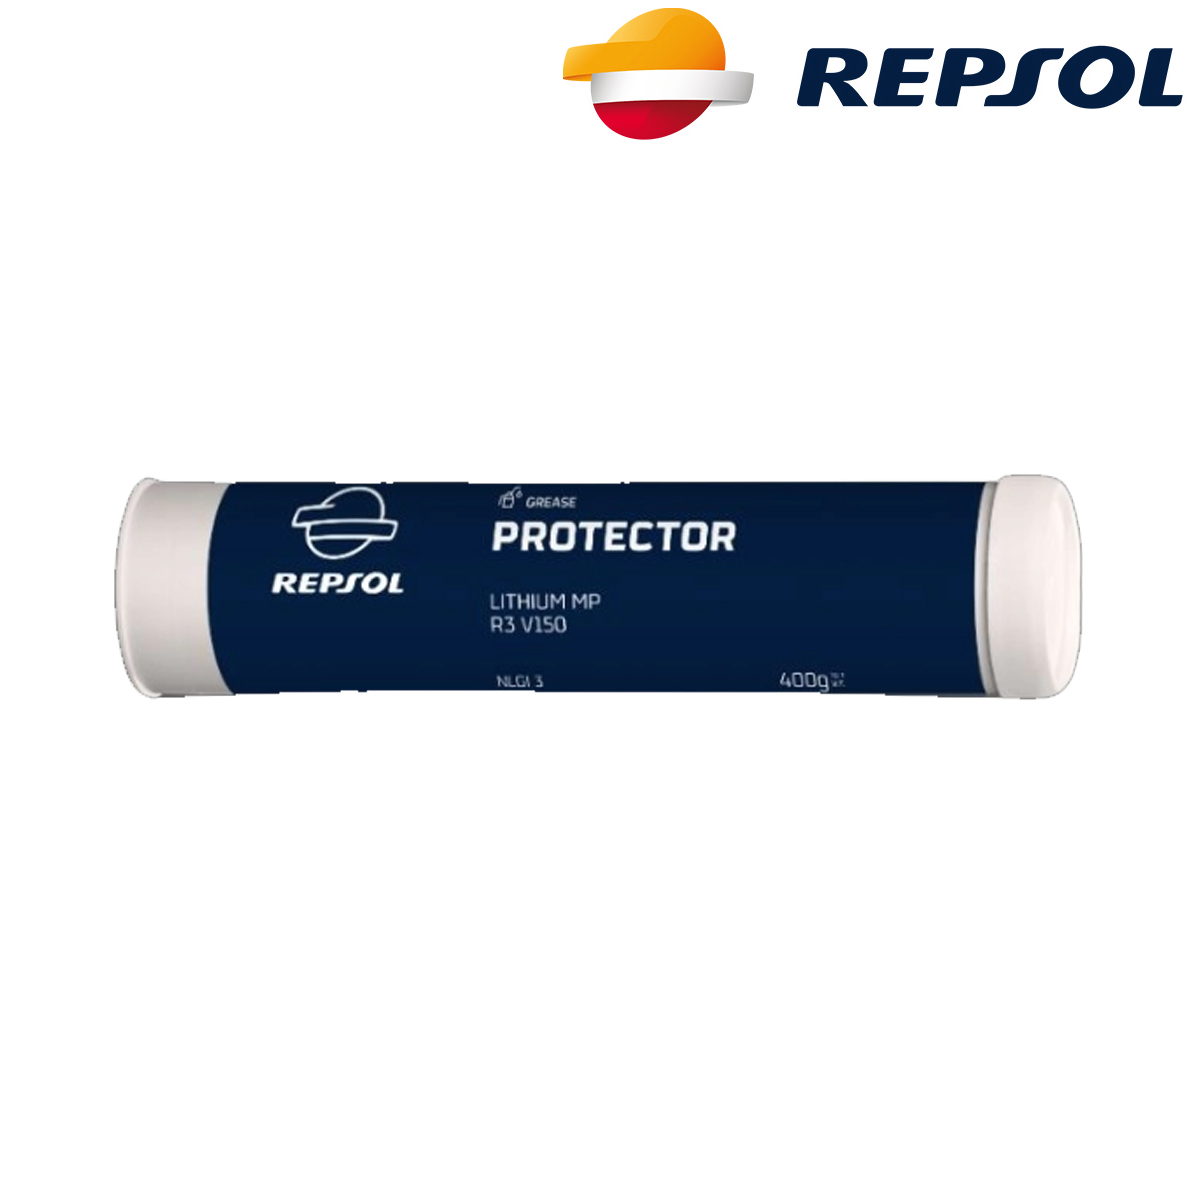 Univerzalna mast za podmazivanje Repsol Protector Lithium MPR2 V150 400g RPP8130EJG